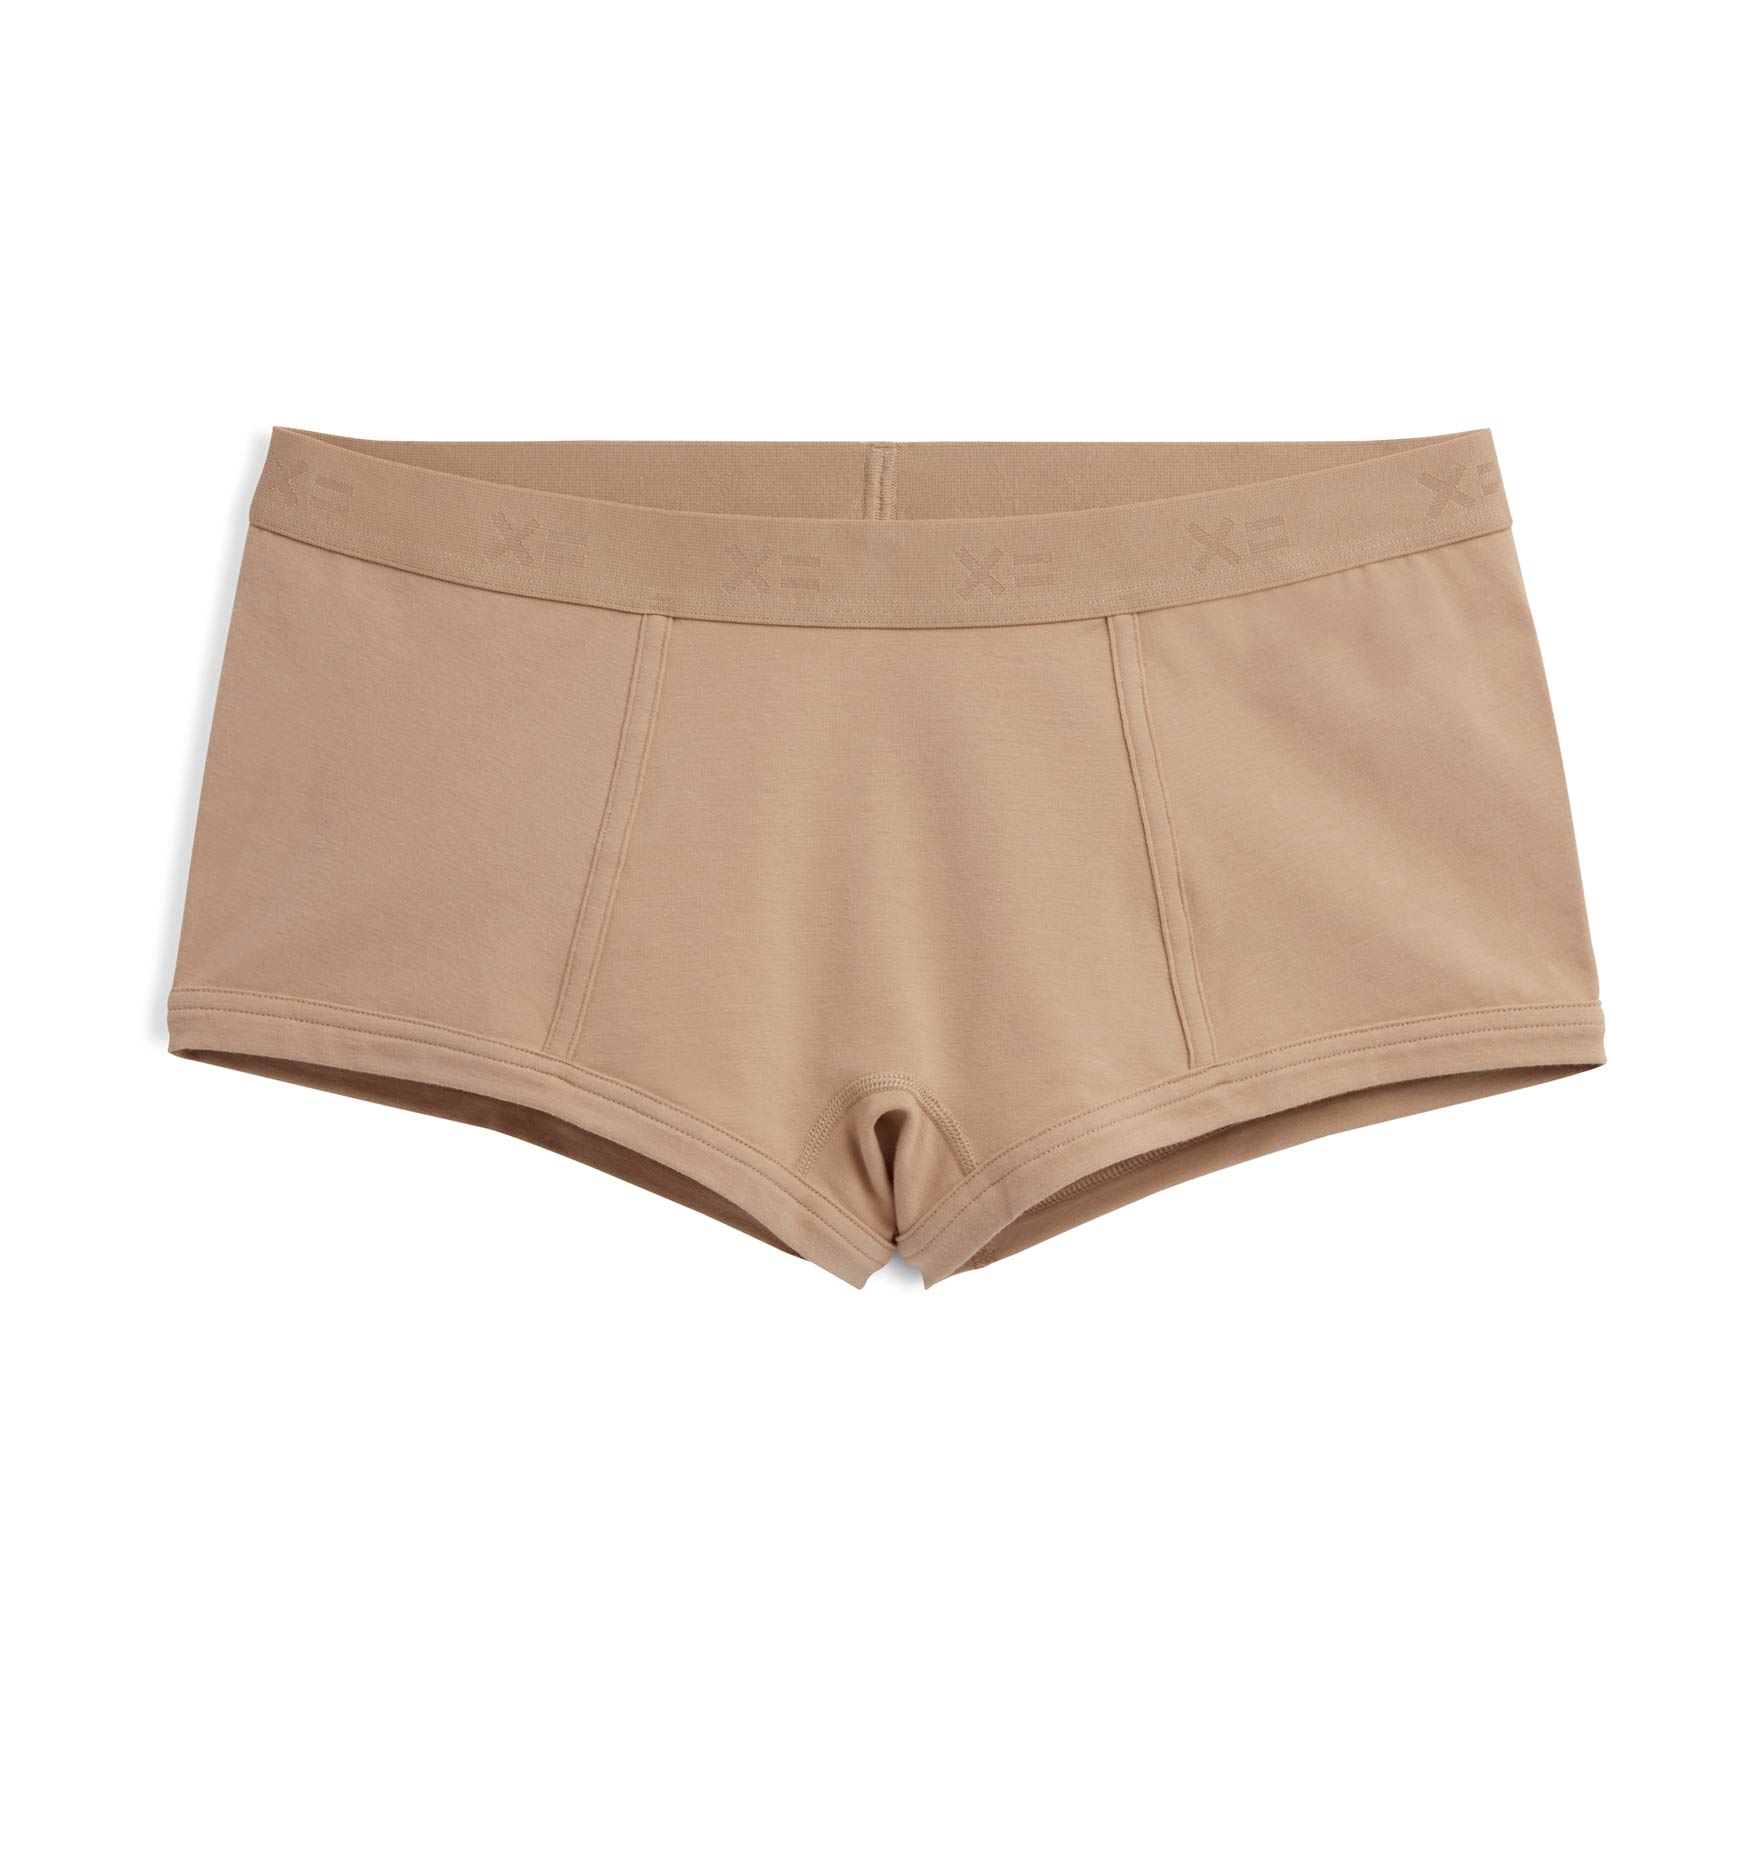 Essentials Women's Cotton Boy Shorts Underwear, Pack of 5